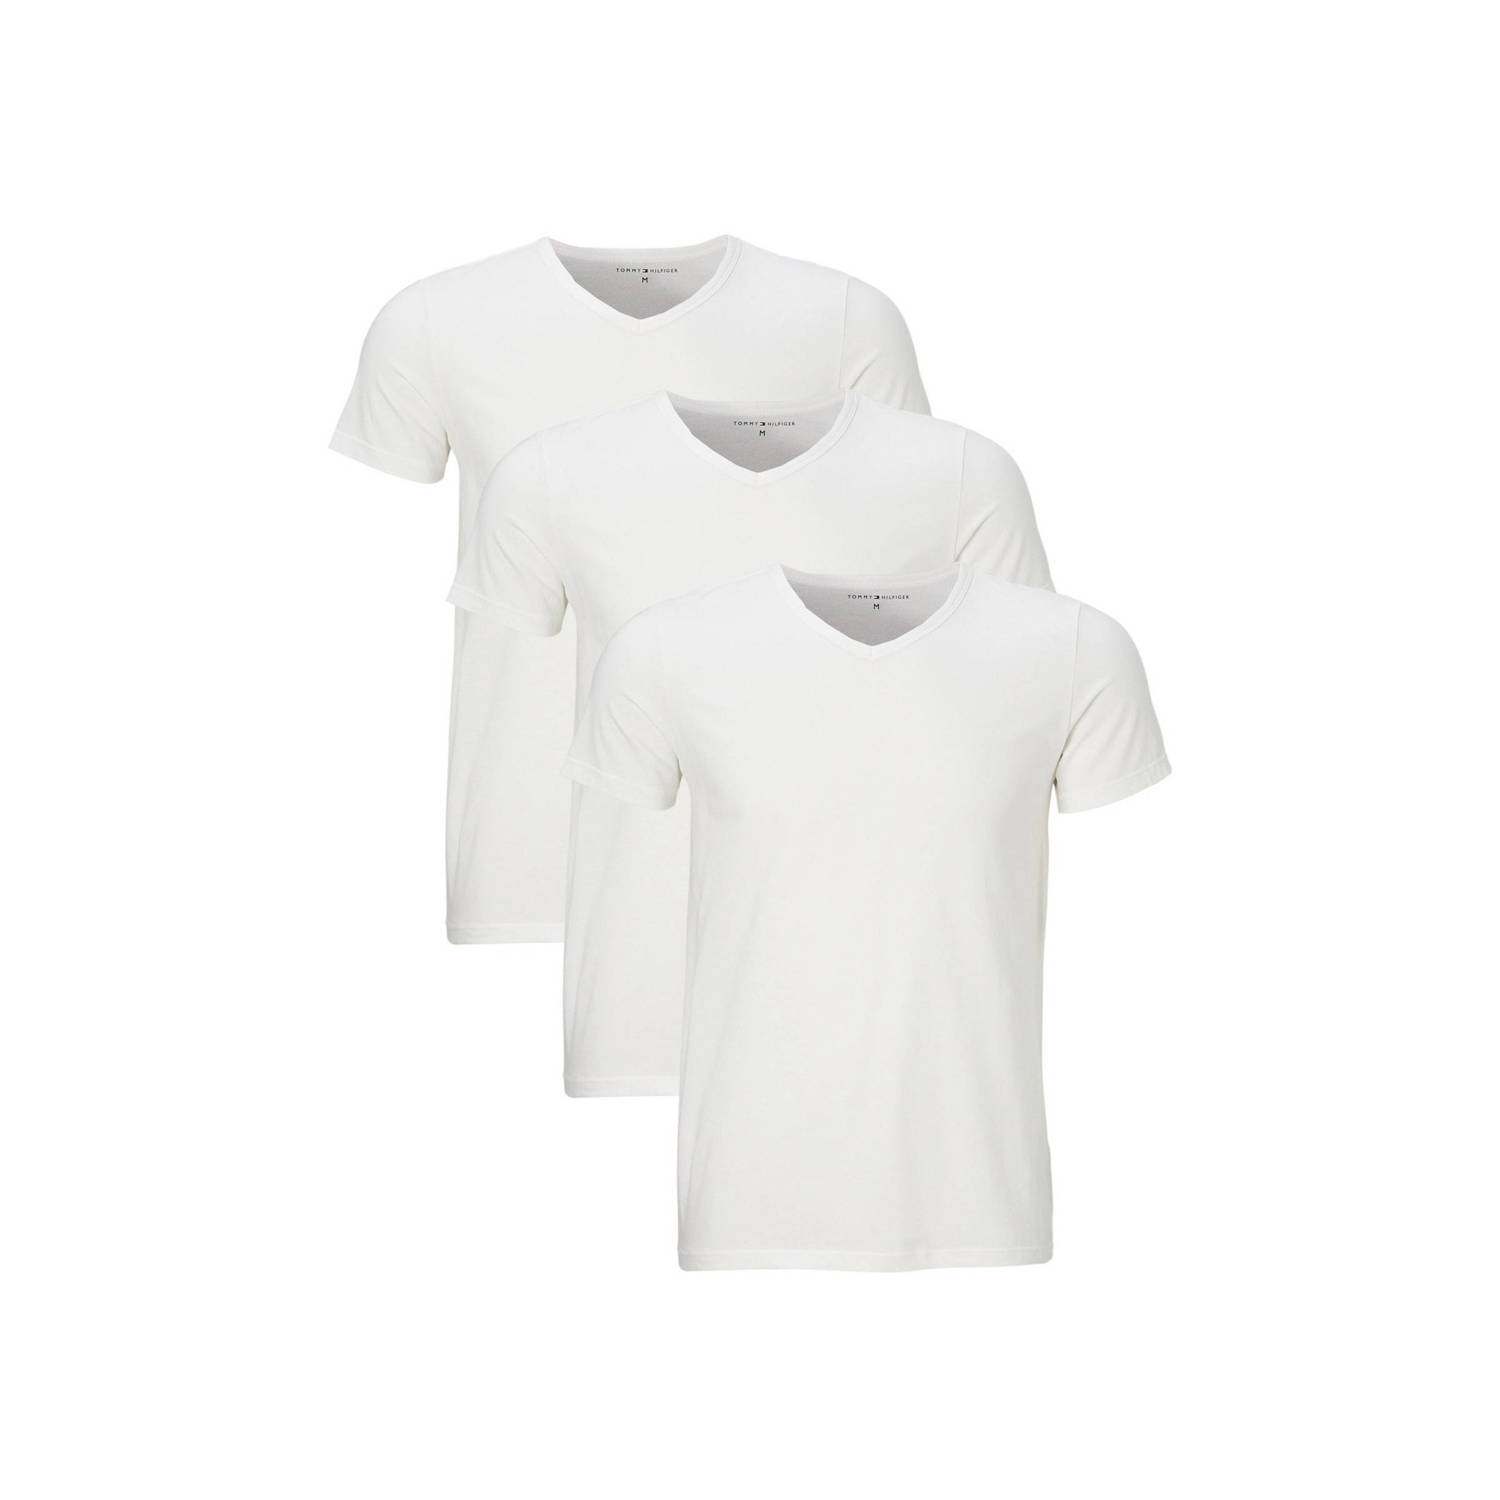 Tommy Hilfiger T-shirt met afgeronde V-hals in een set van 3 stuks